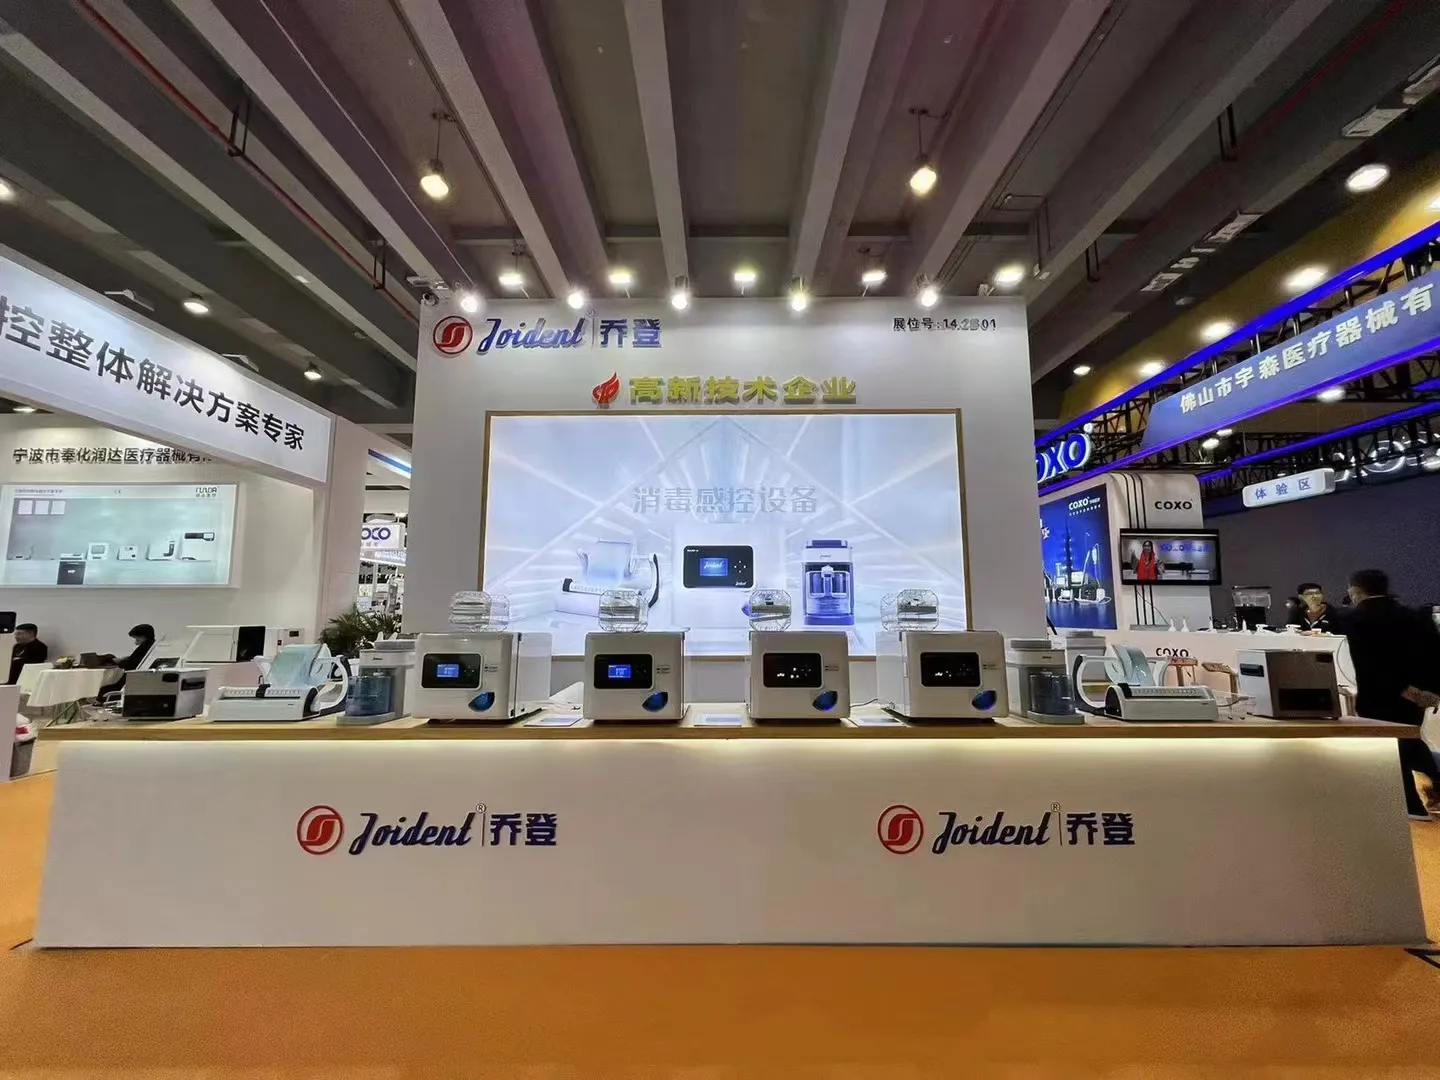 Een observatie over de Zuid-Chinese internationale tentoonstelling voor orale medische apparatuur van Joident